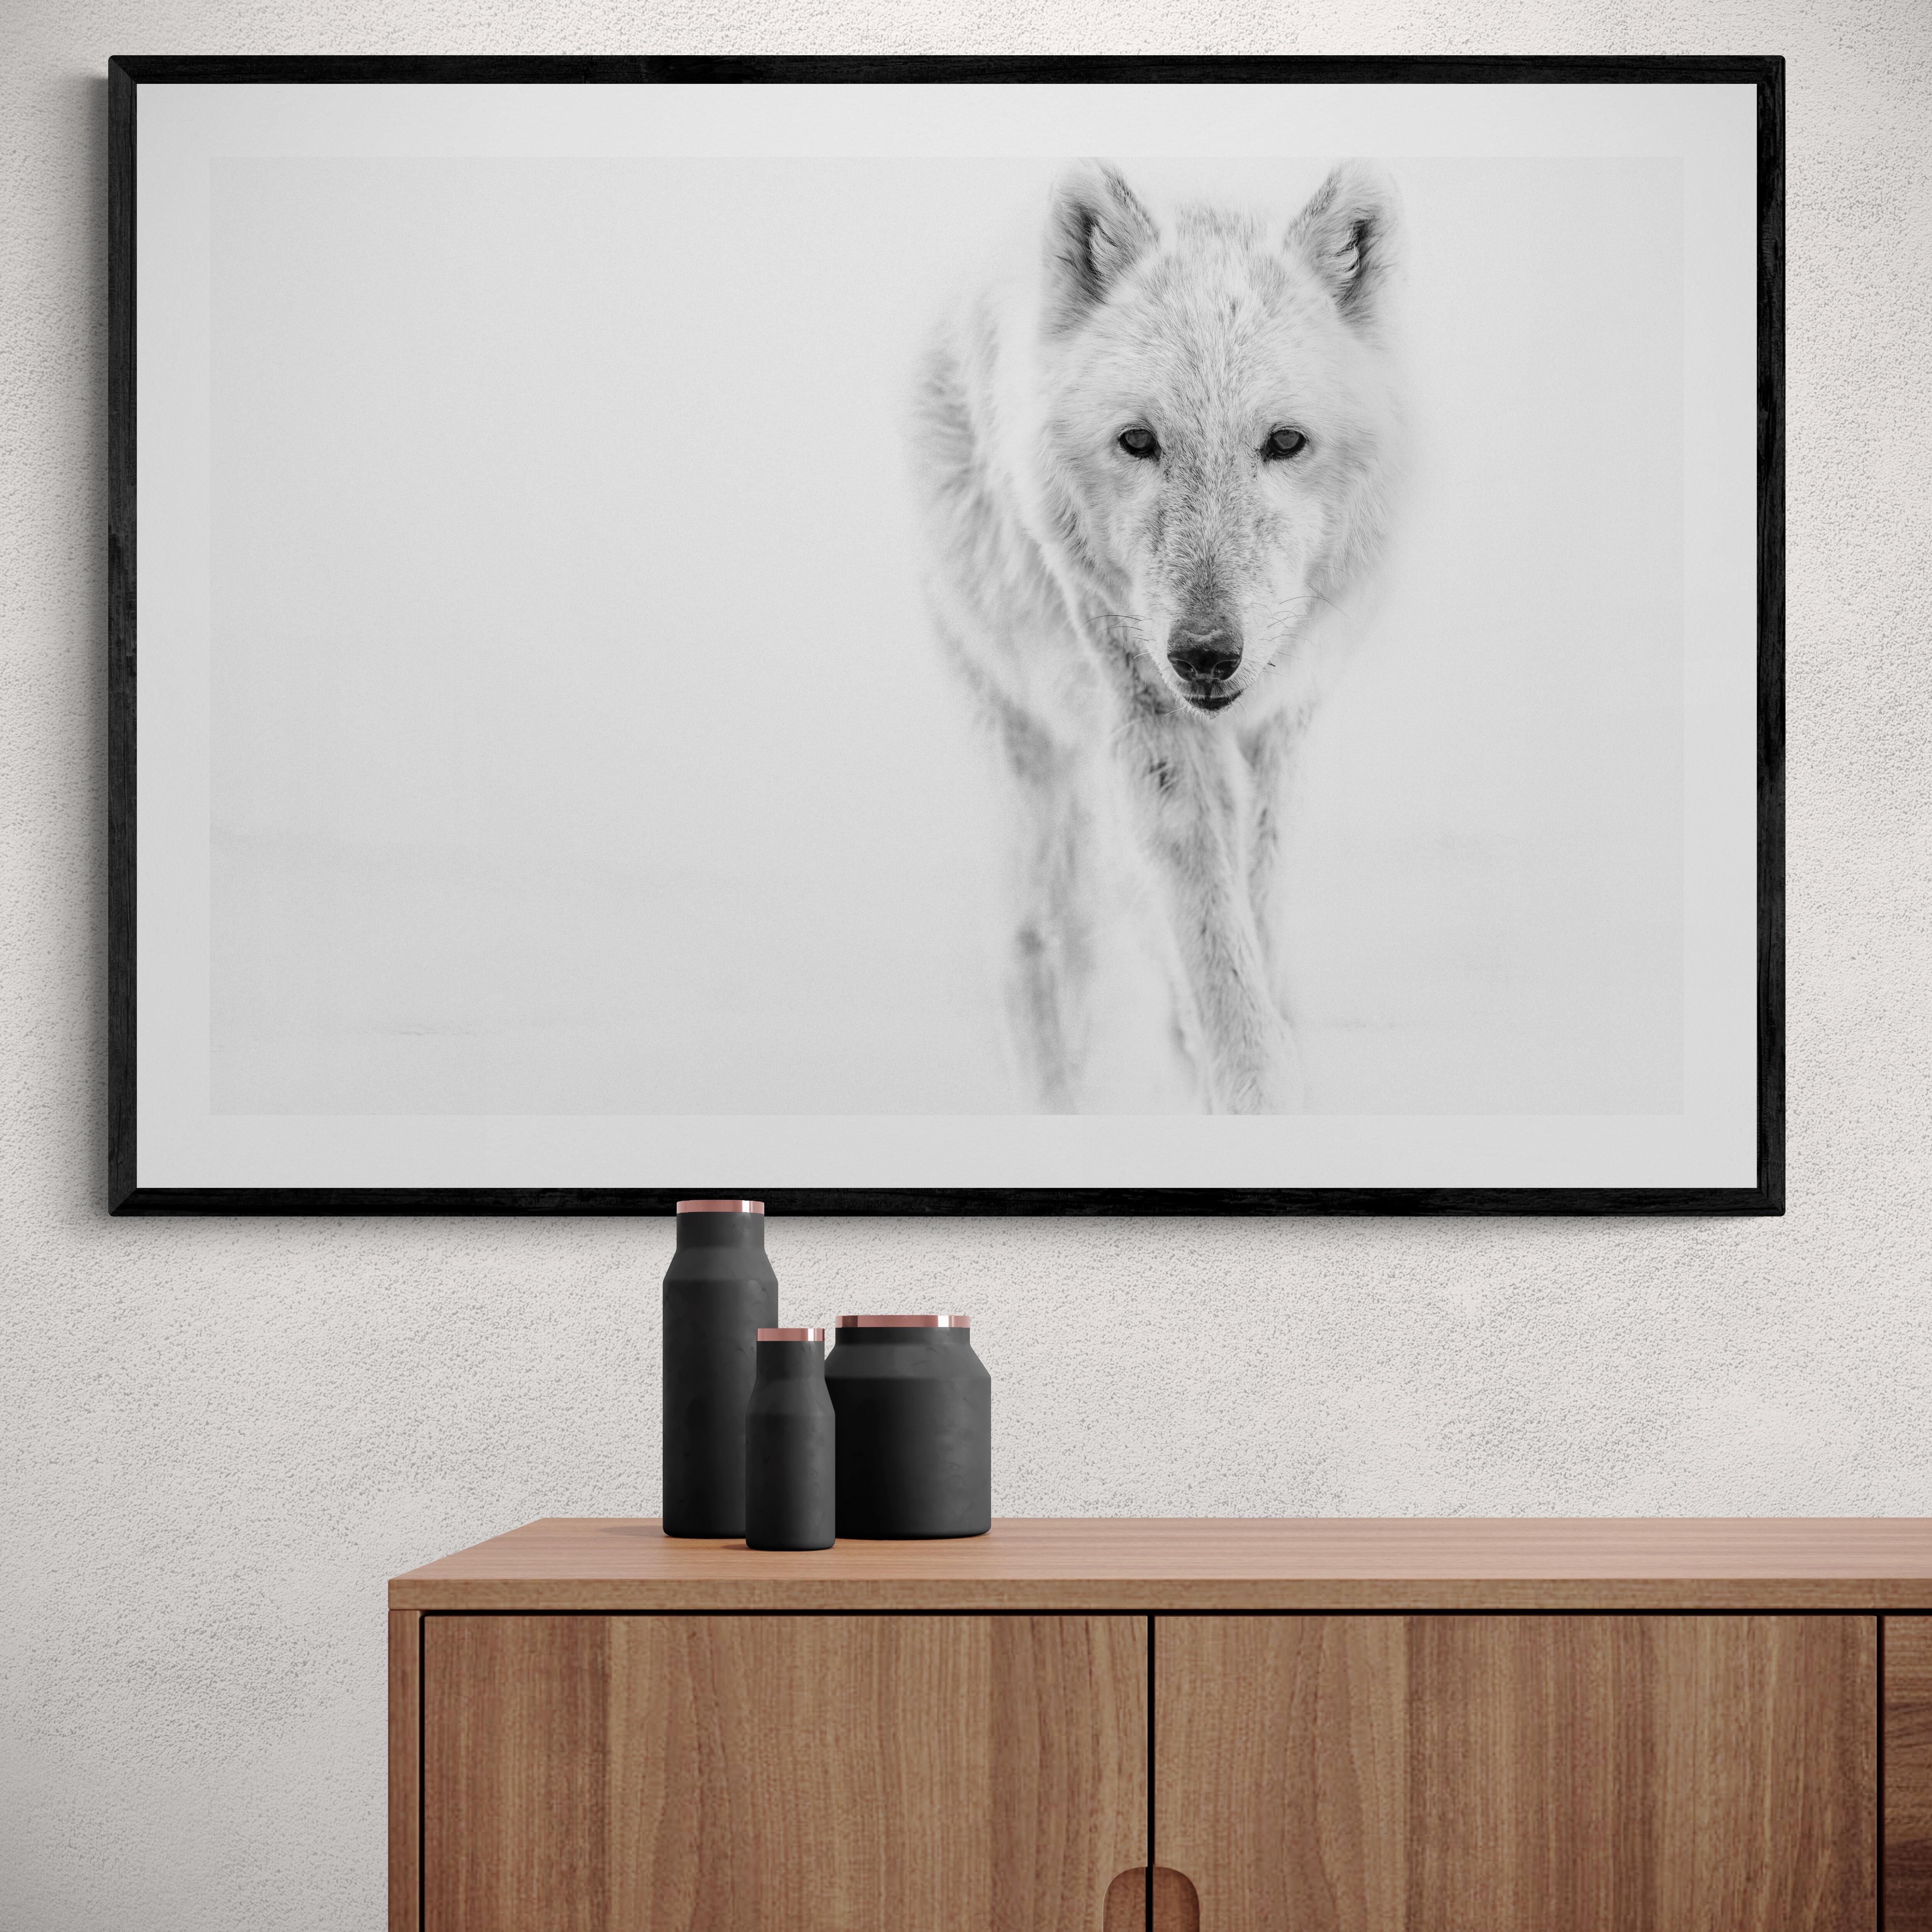 Il s'agit d'une photographie contemporaine en noir et blanc d'un loup arctique.
Imprimé sur du papier d'archives en utilisant uniquement de l'encre d'archives. 
Encadrement disponible. Renseignez-vous sur les tarifs. 

 Shane Russeck s'est forgé une